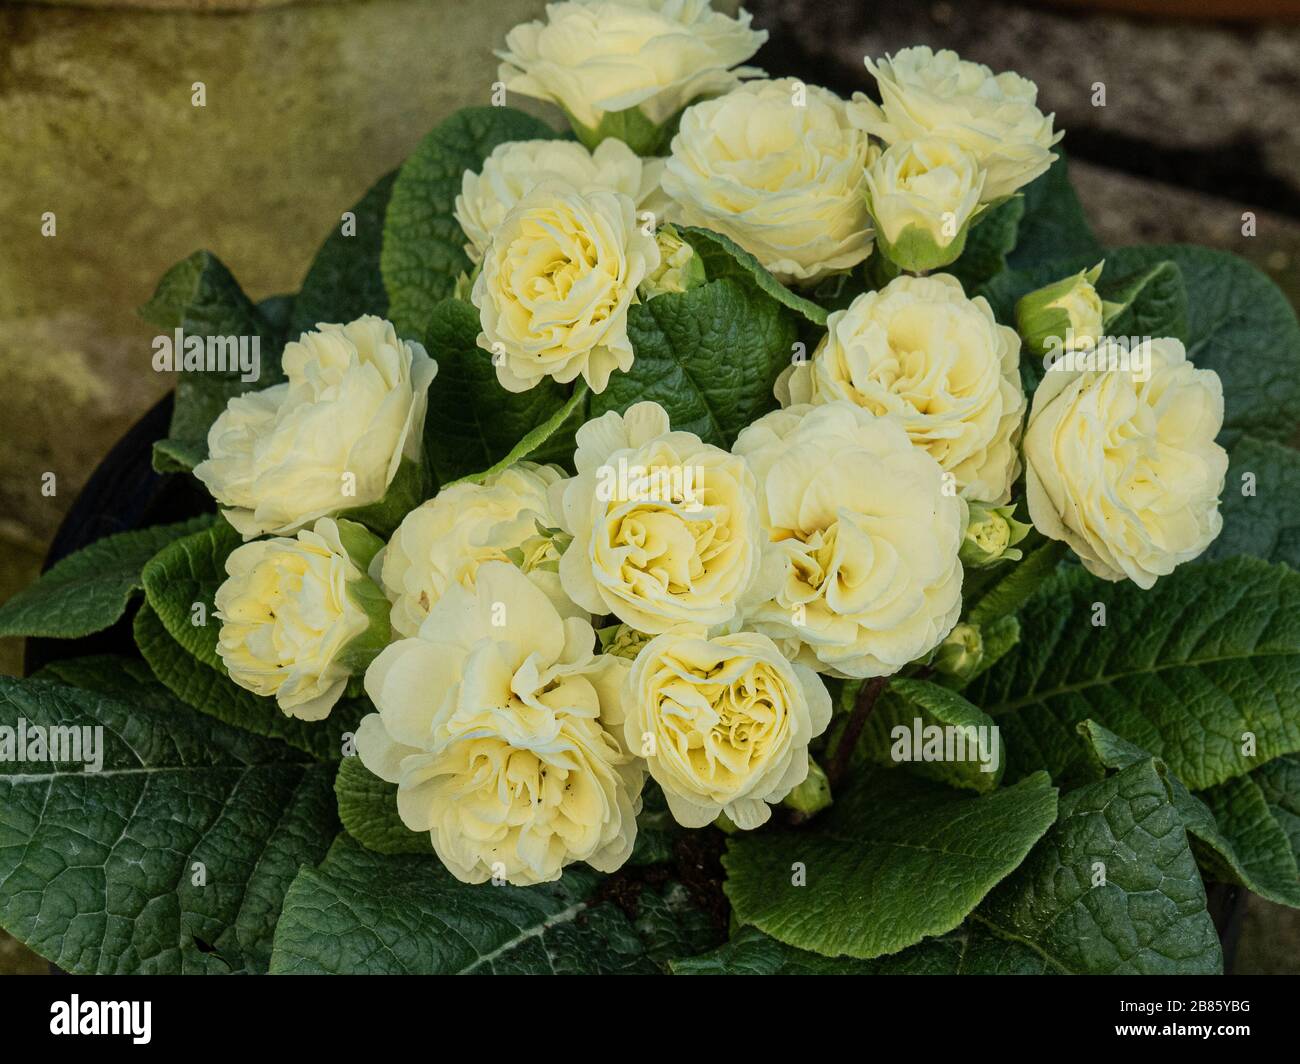 Une plante de la crème bionrose biélorusse montrant les fleurs de crème douce Banque D'Images